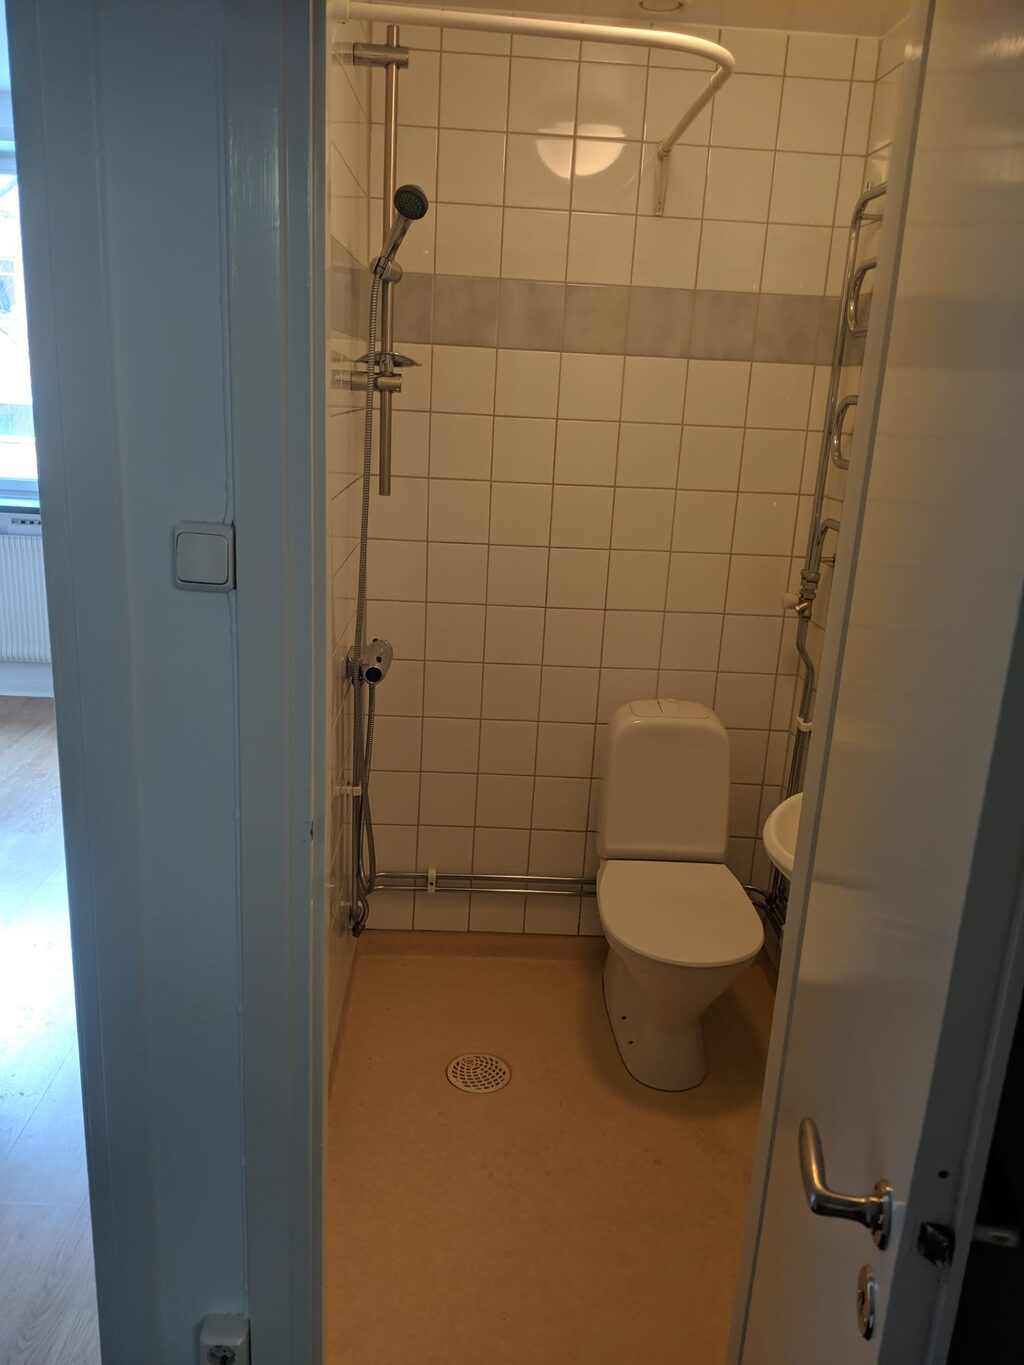 Lägenhetsbyte - Gotlandsgatan 52, 116 65 Stockholm